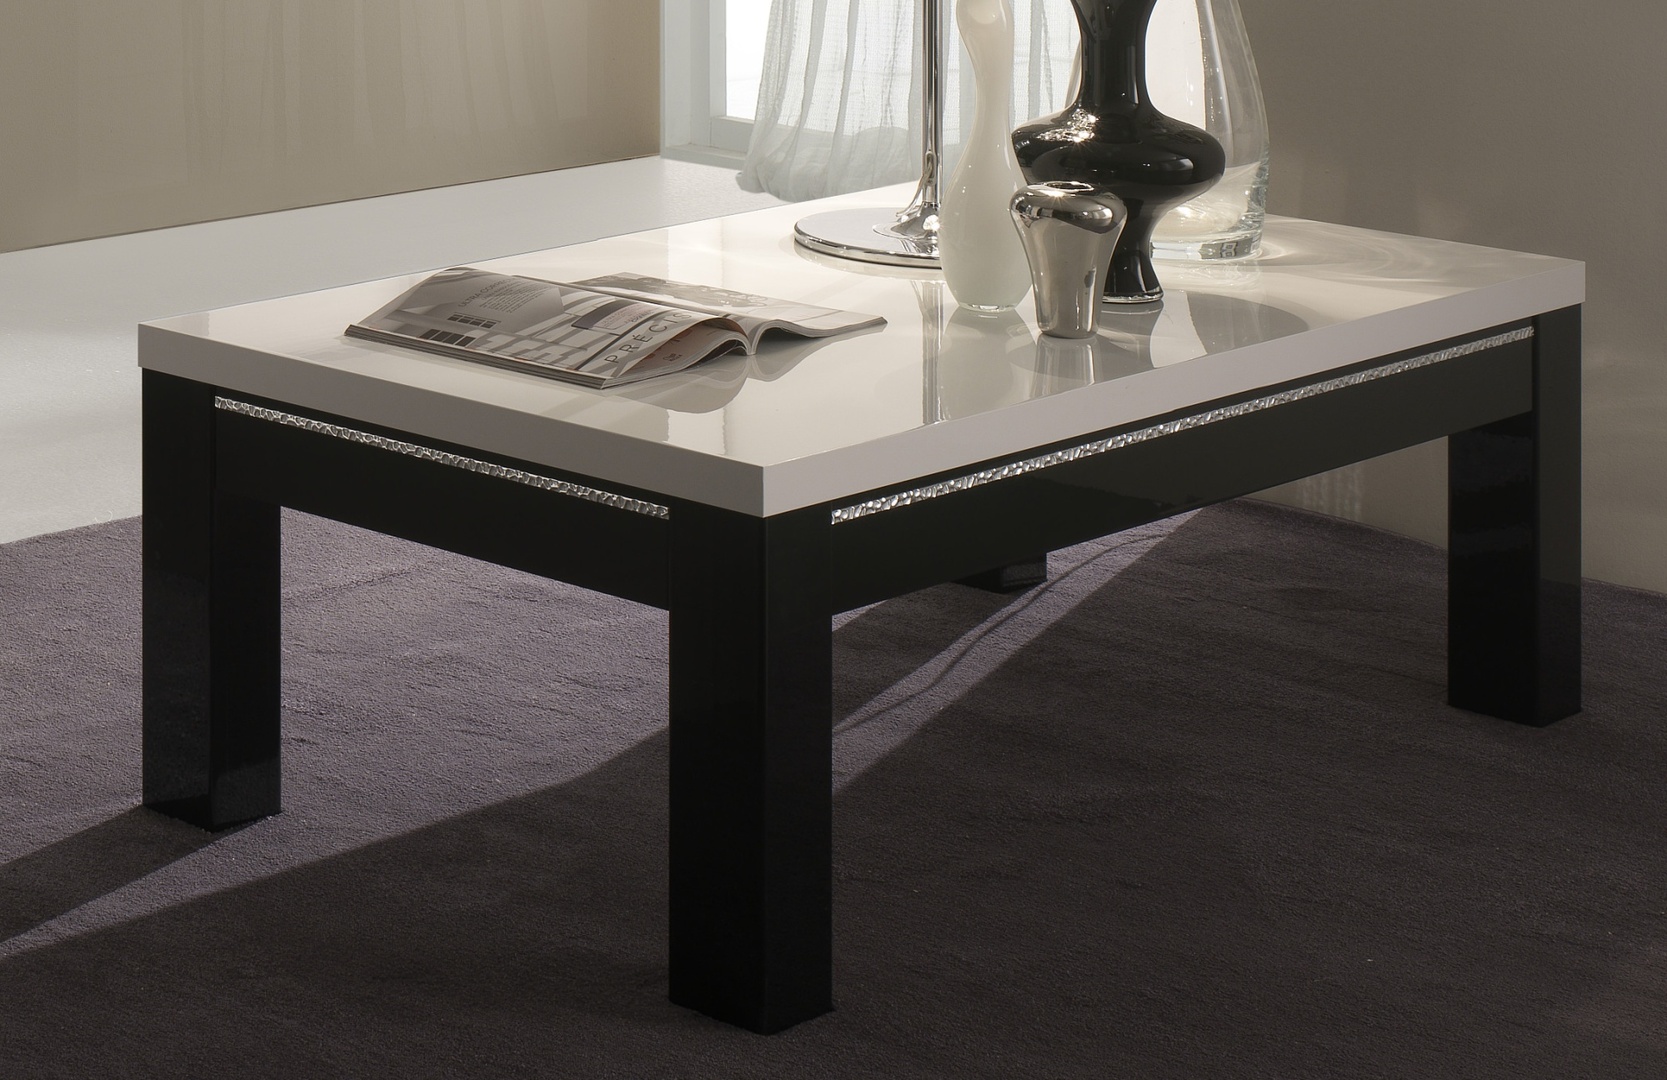 Table basse carrée design laquée blanche et noire Darma